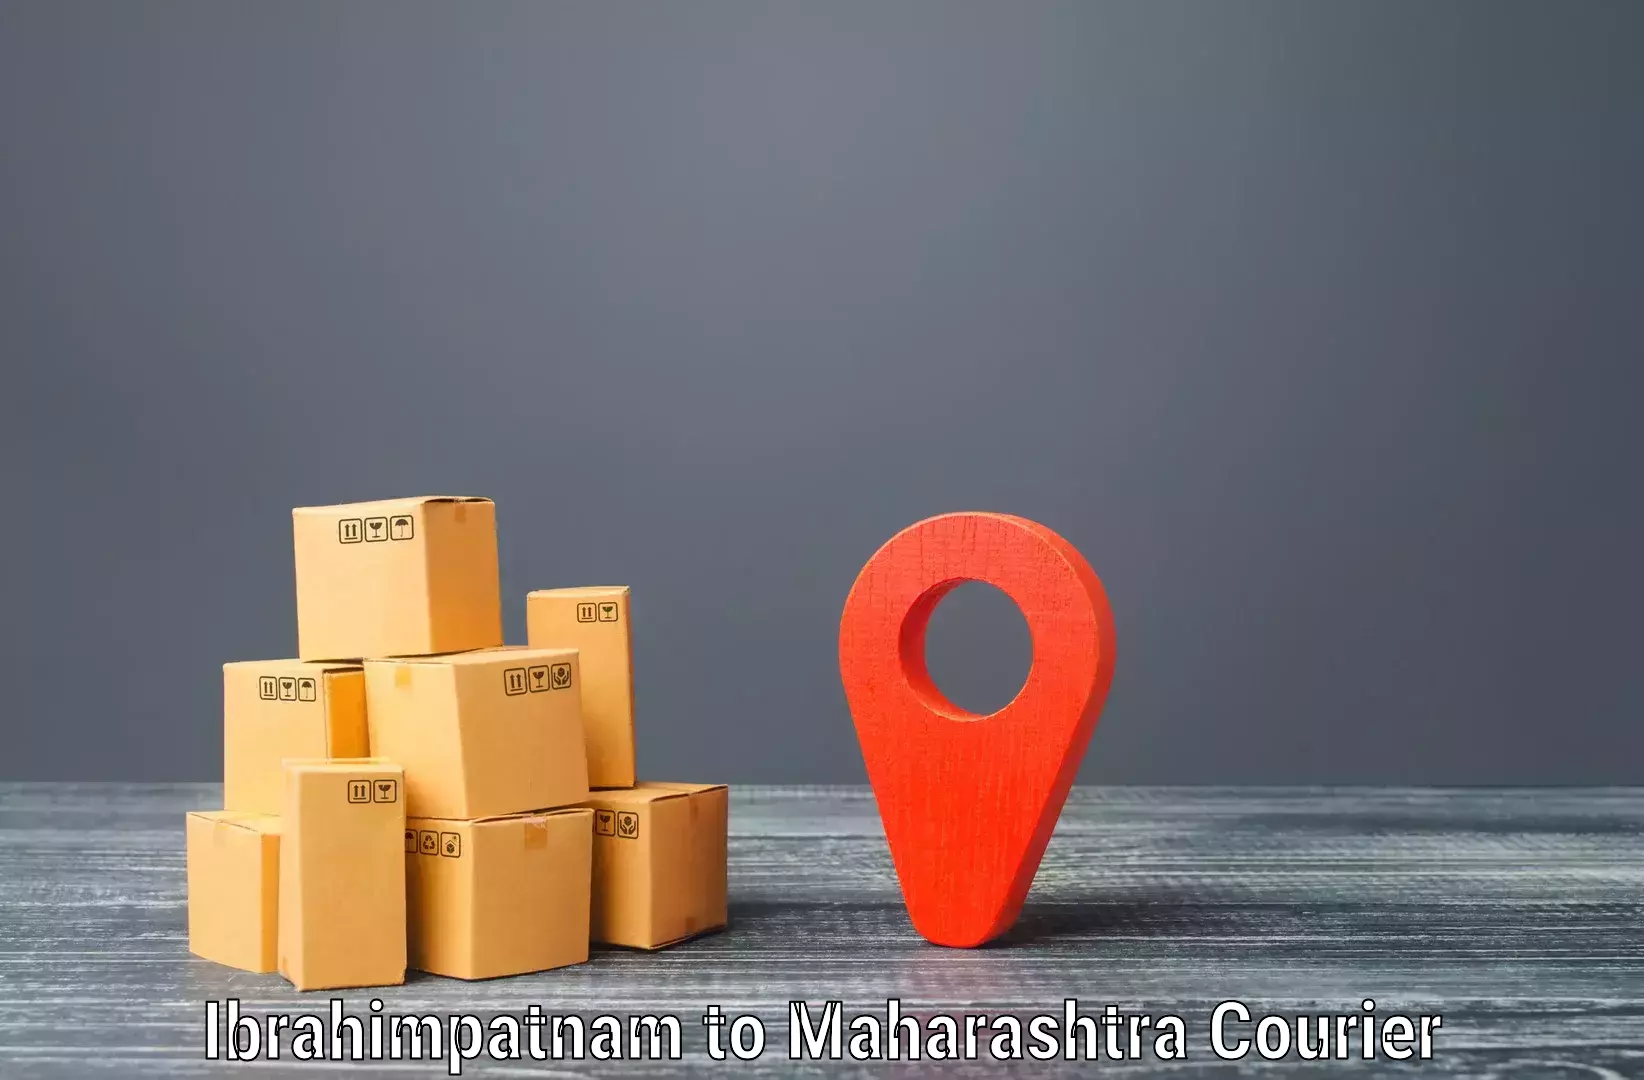 Express courier facilities Ibrahimpatnam to Sangola